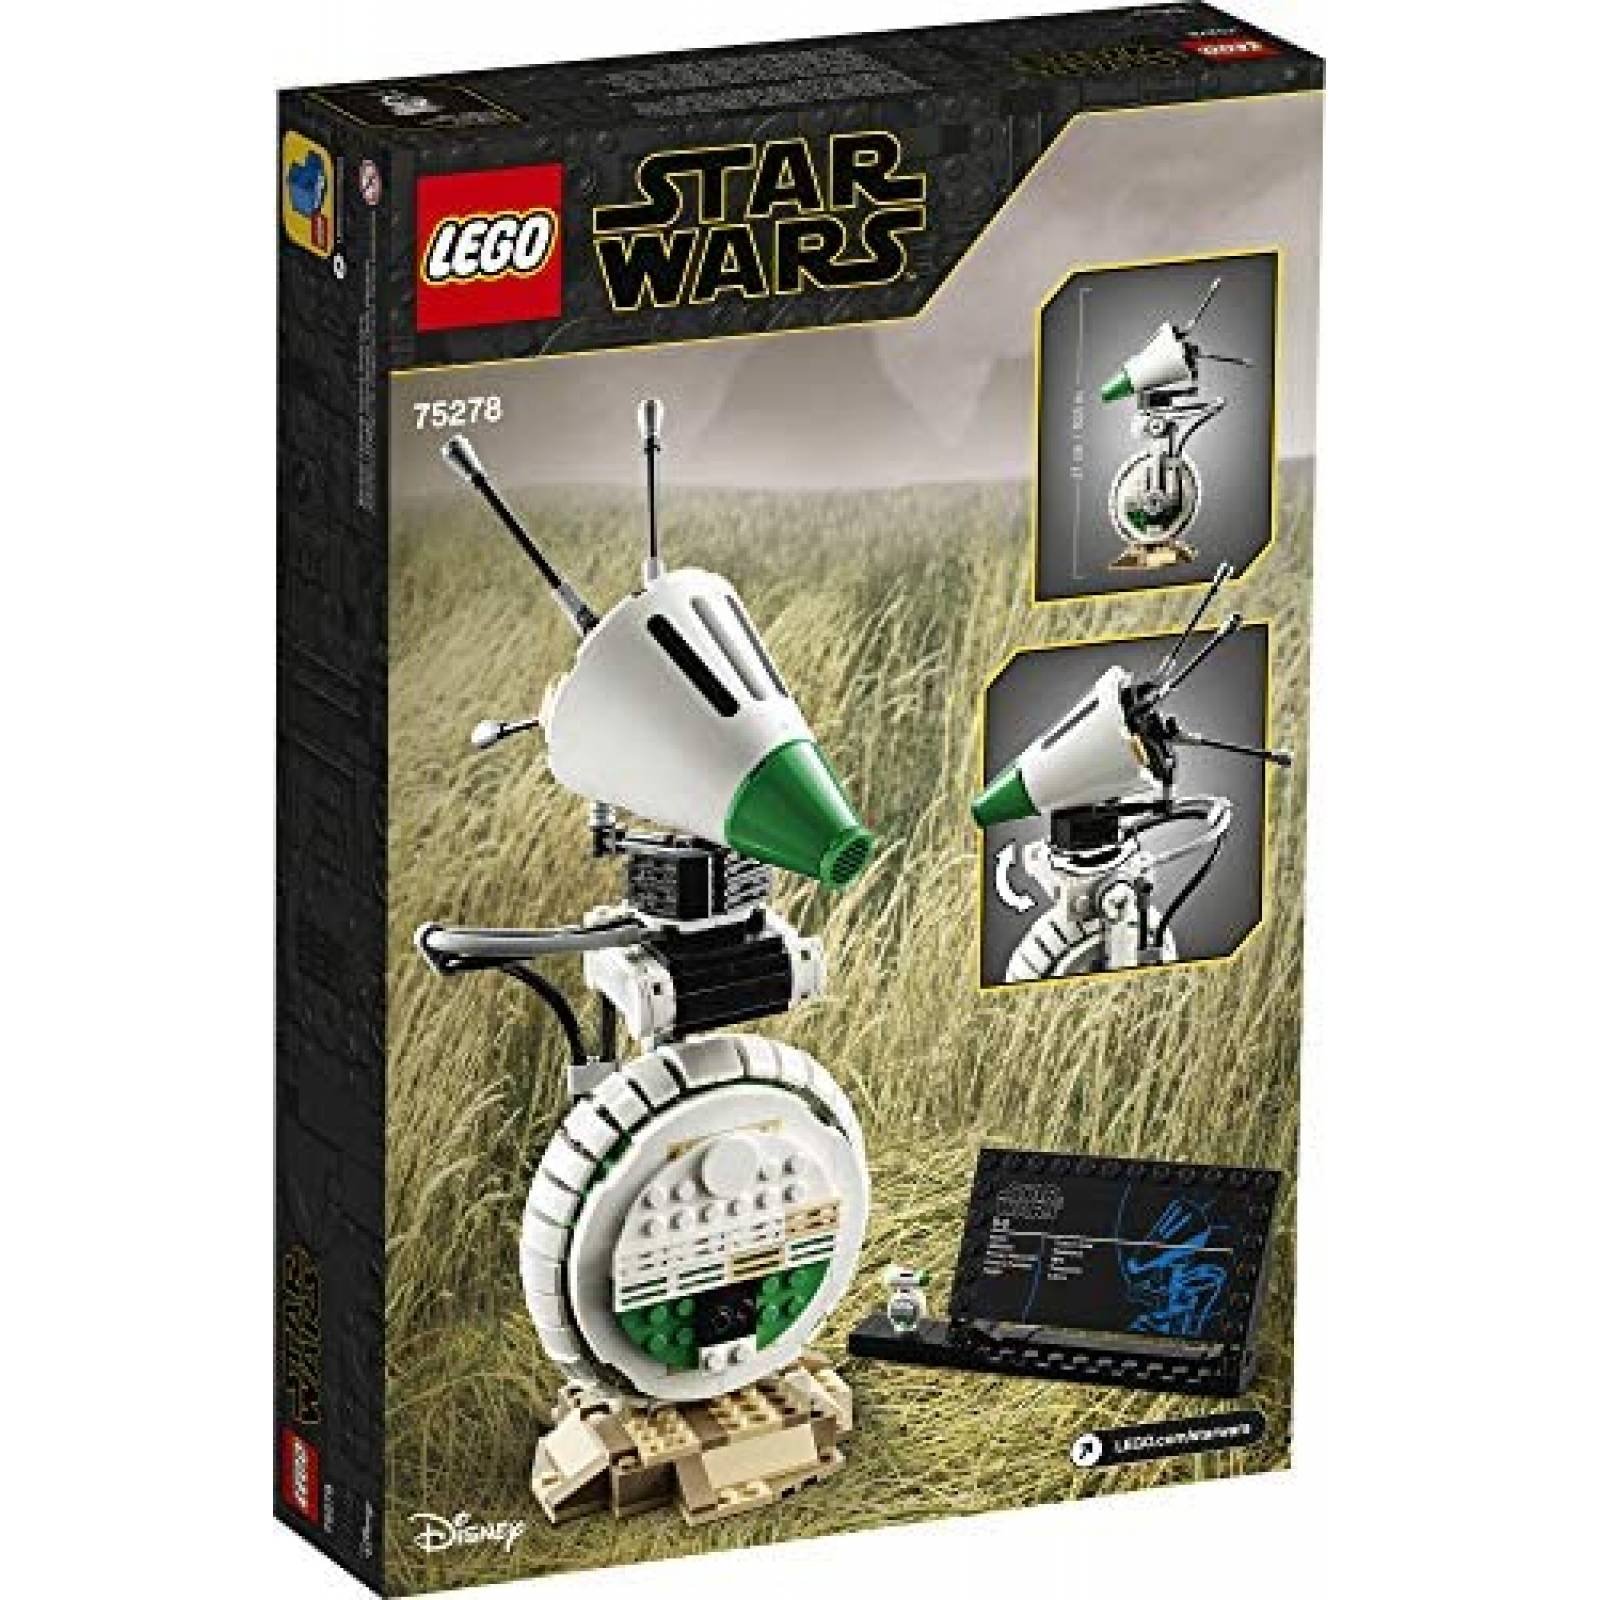 Juguete Armable LEGO Star Wars para Niños 519 Piezas